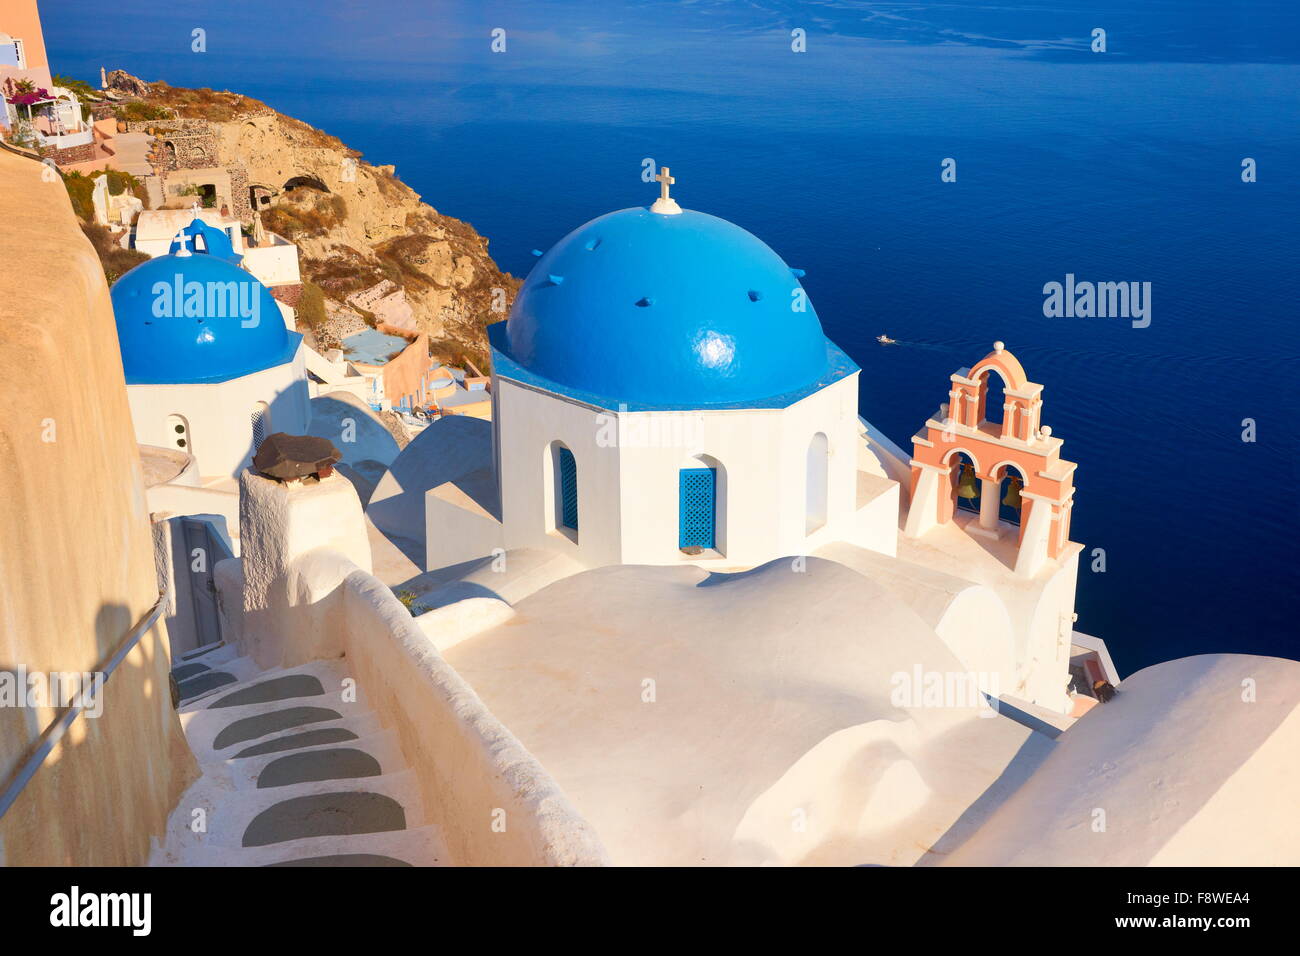 Popolari della caldera di Santorini paesaggio con greca chiesa bianca che si affaccia sul mare e la cittadina di Oia - Santorini Island, Grecia Foto Stock